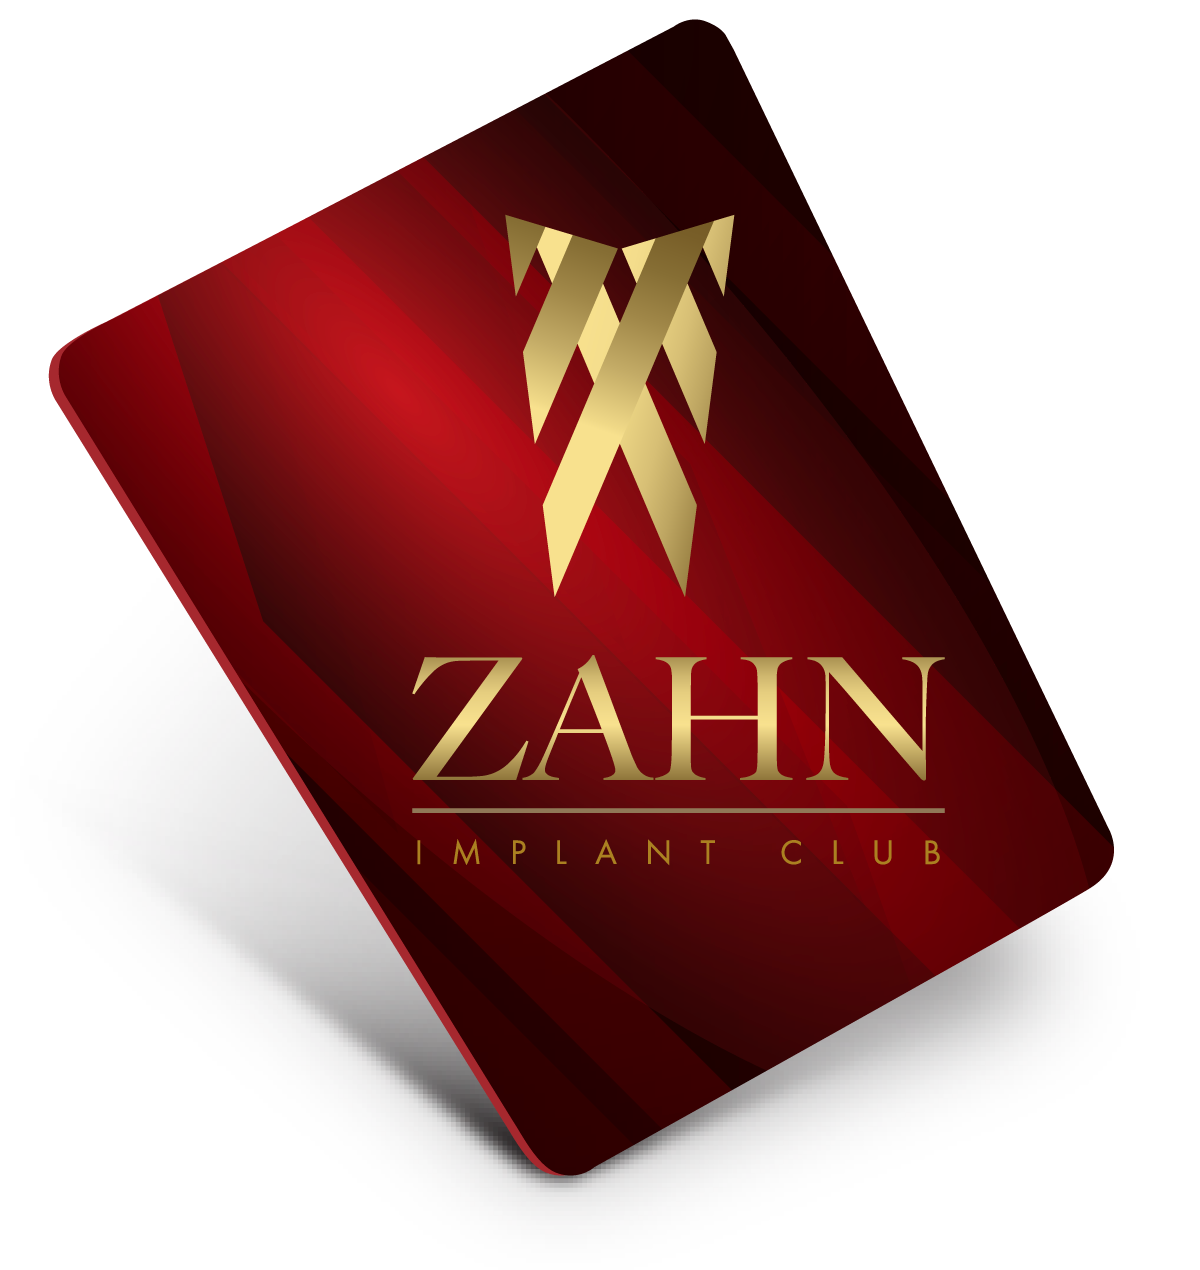 Zahn Implant Club in El Dorado Hills California